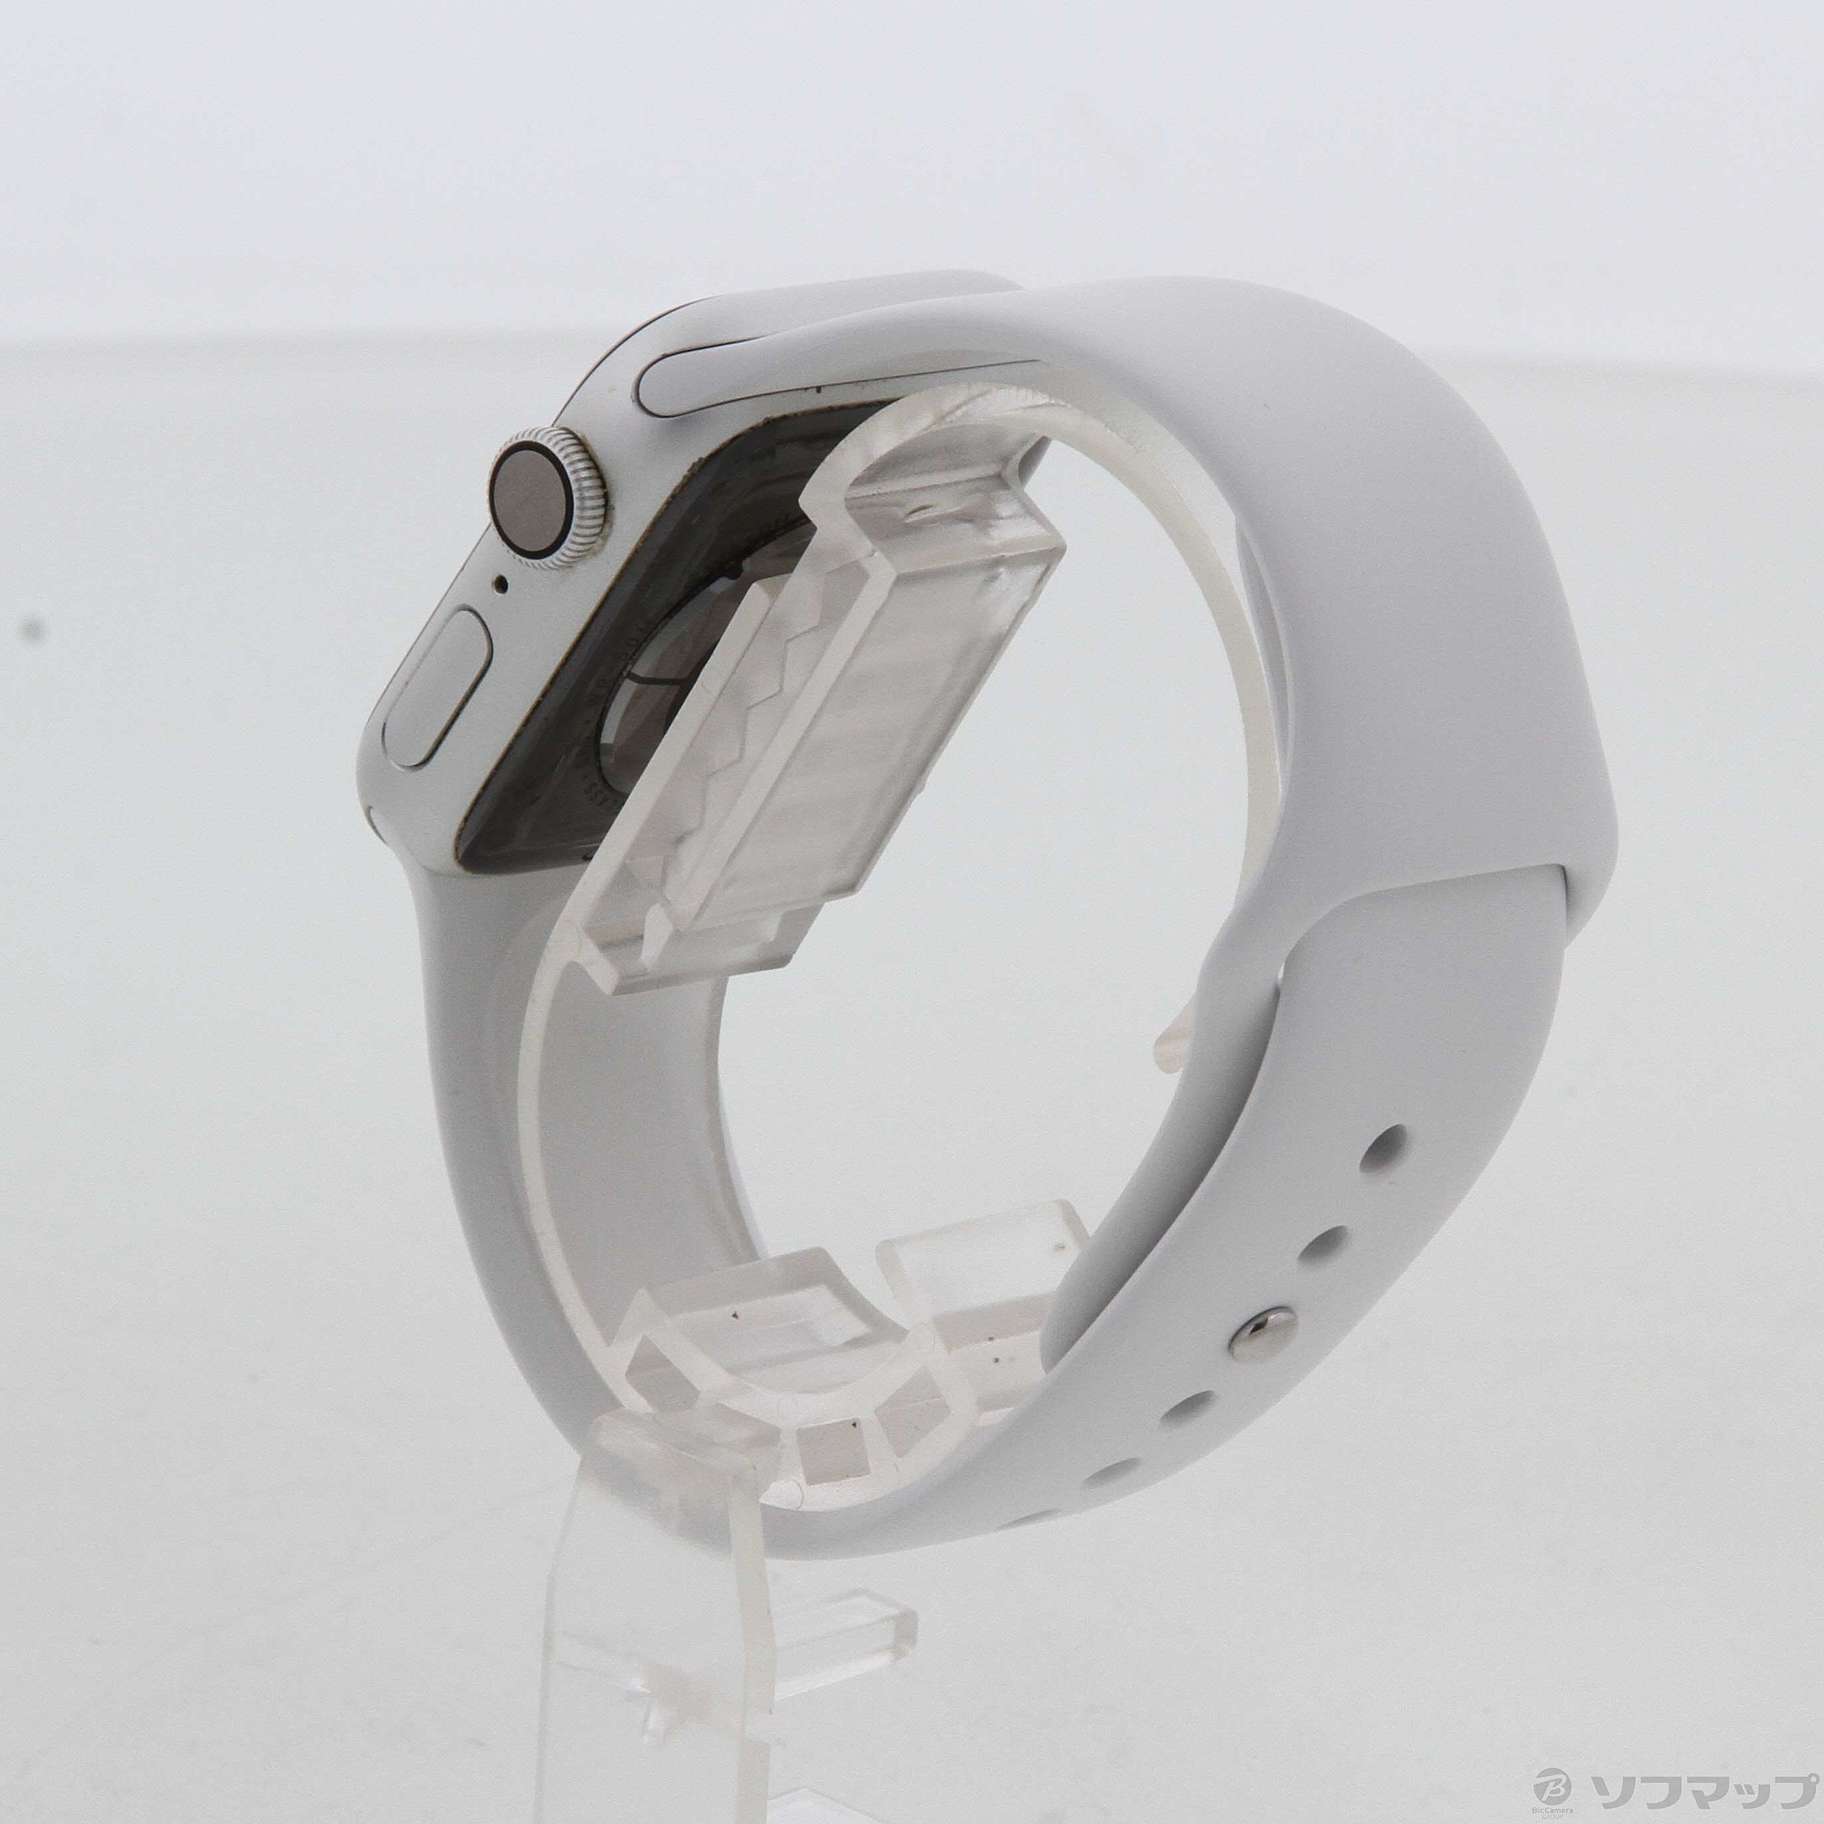 Apple Watch Series 4 GPS 40mm シルバーアルミニウムケース ホワイトスポーツバンド